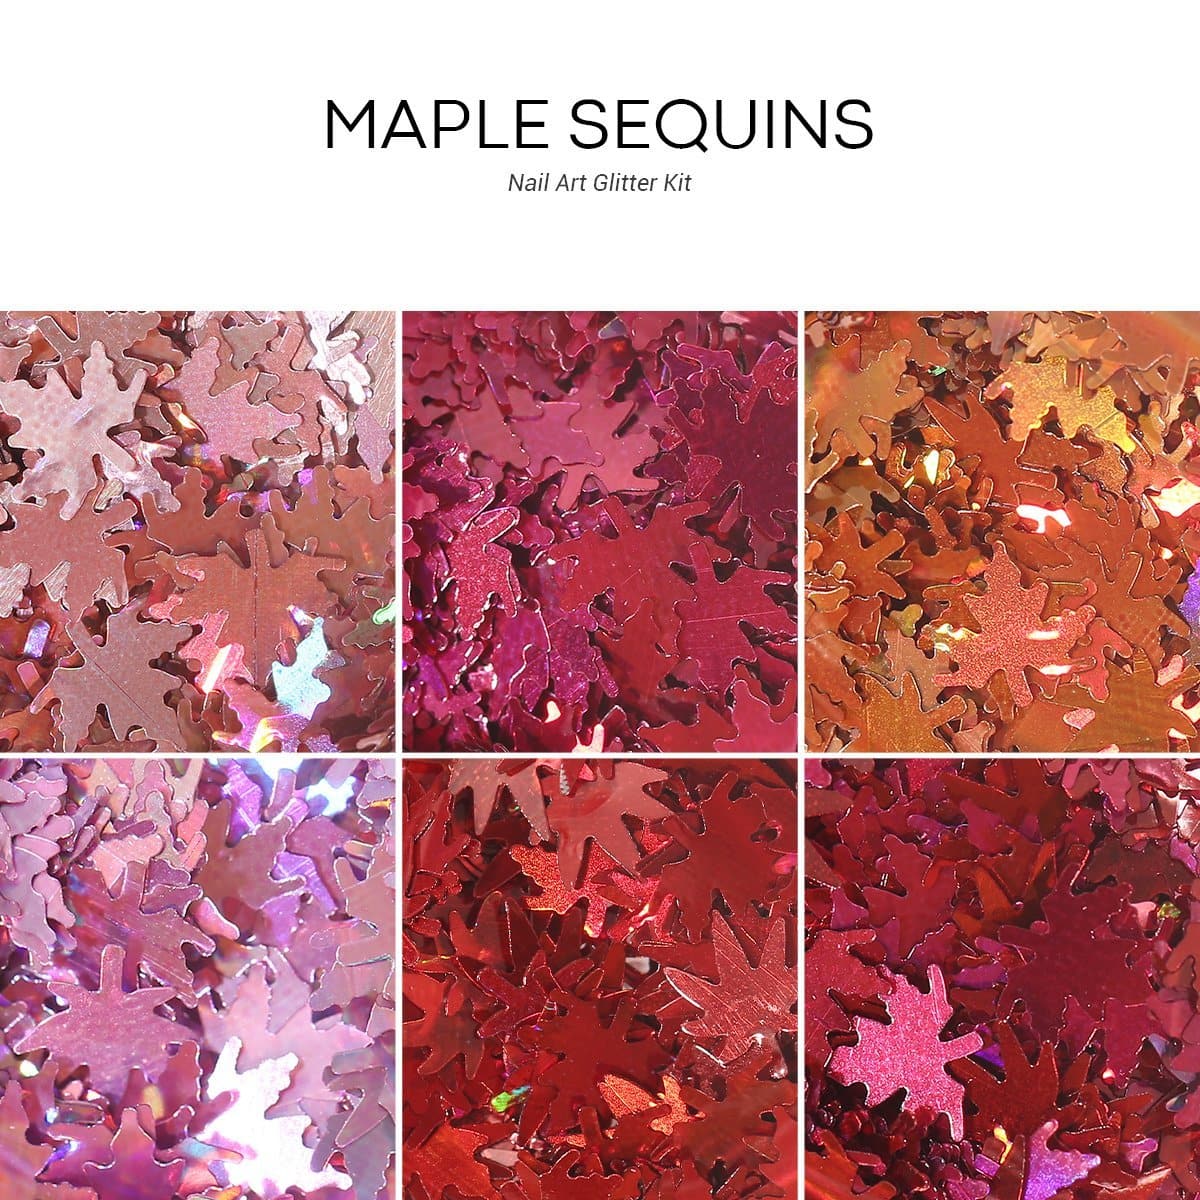 Maple Sequins- Nail Art Glitter Kit - MODELONES.com